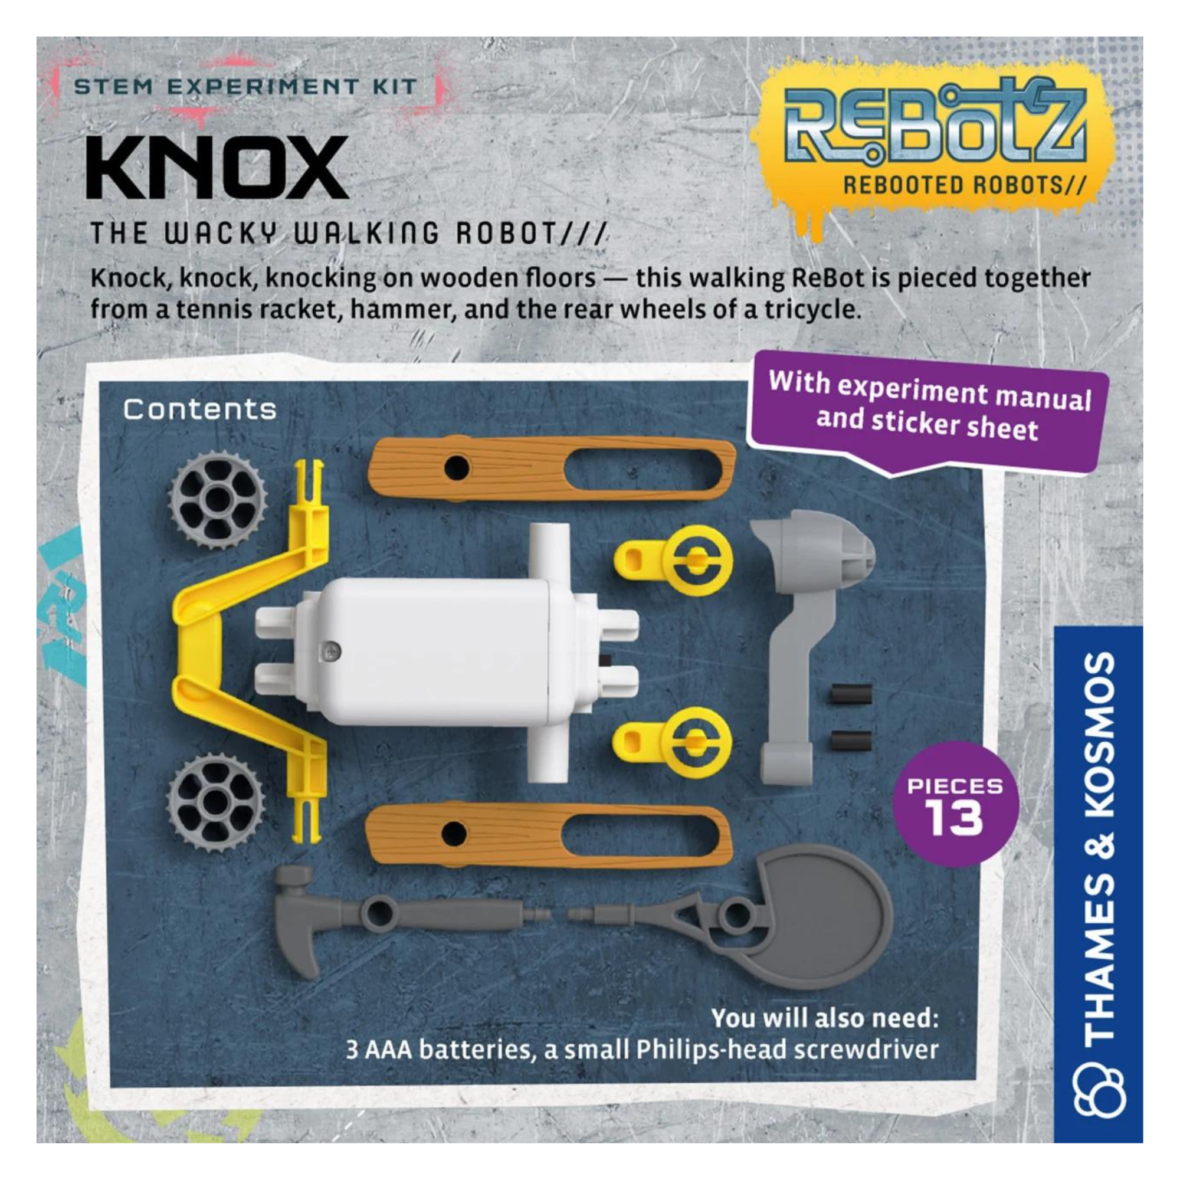 kit-stem-robotul-knox1